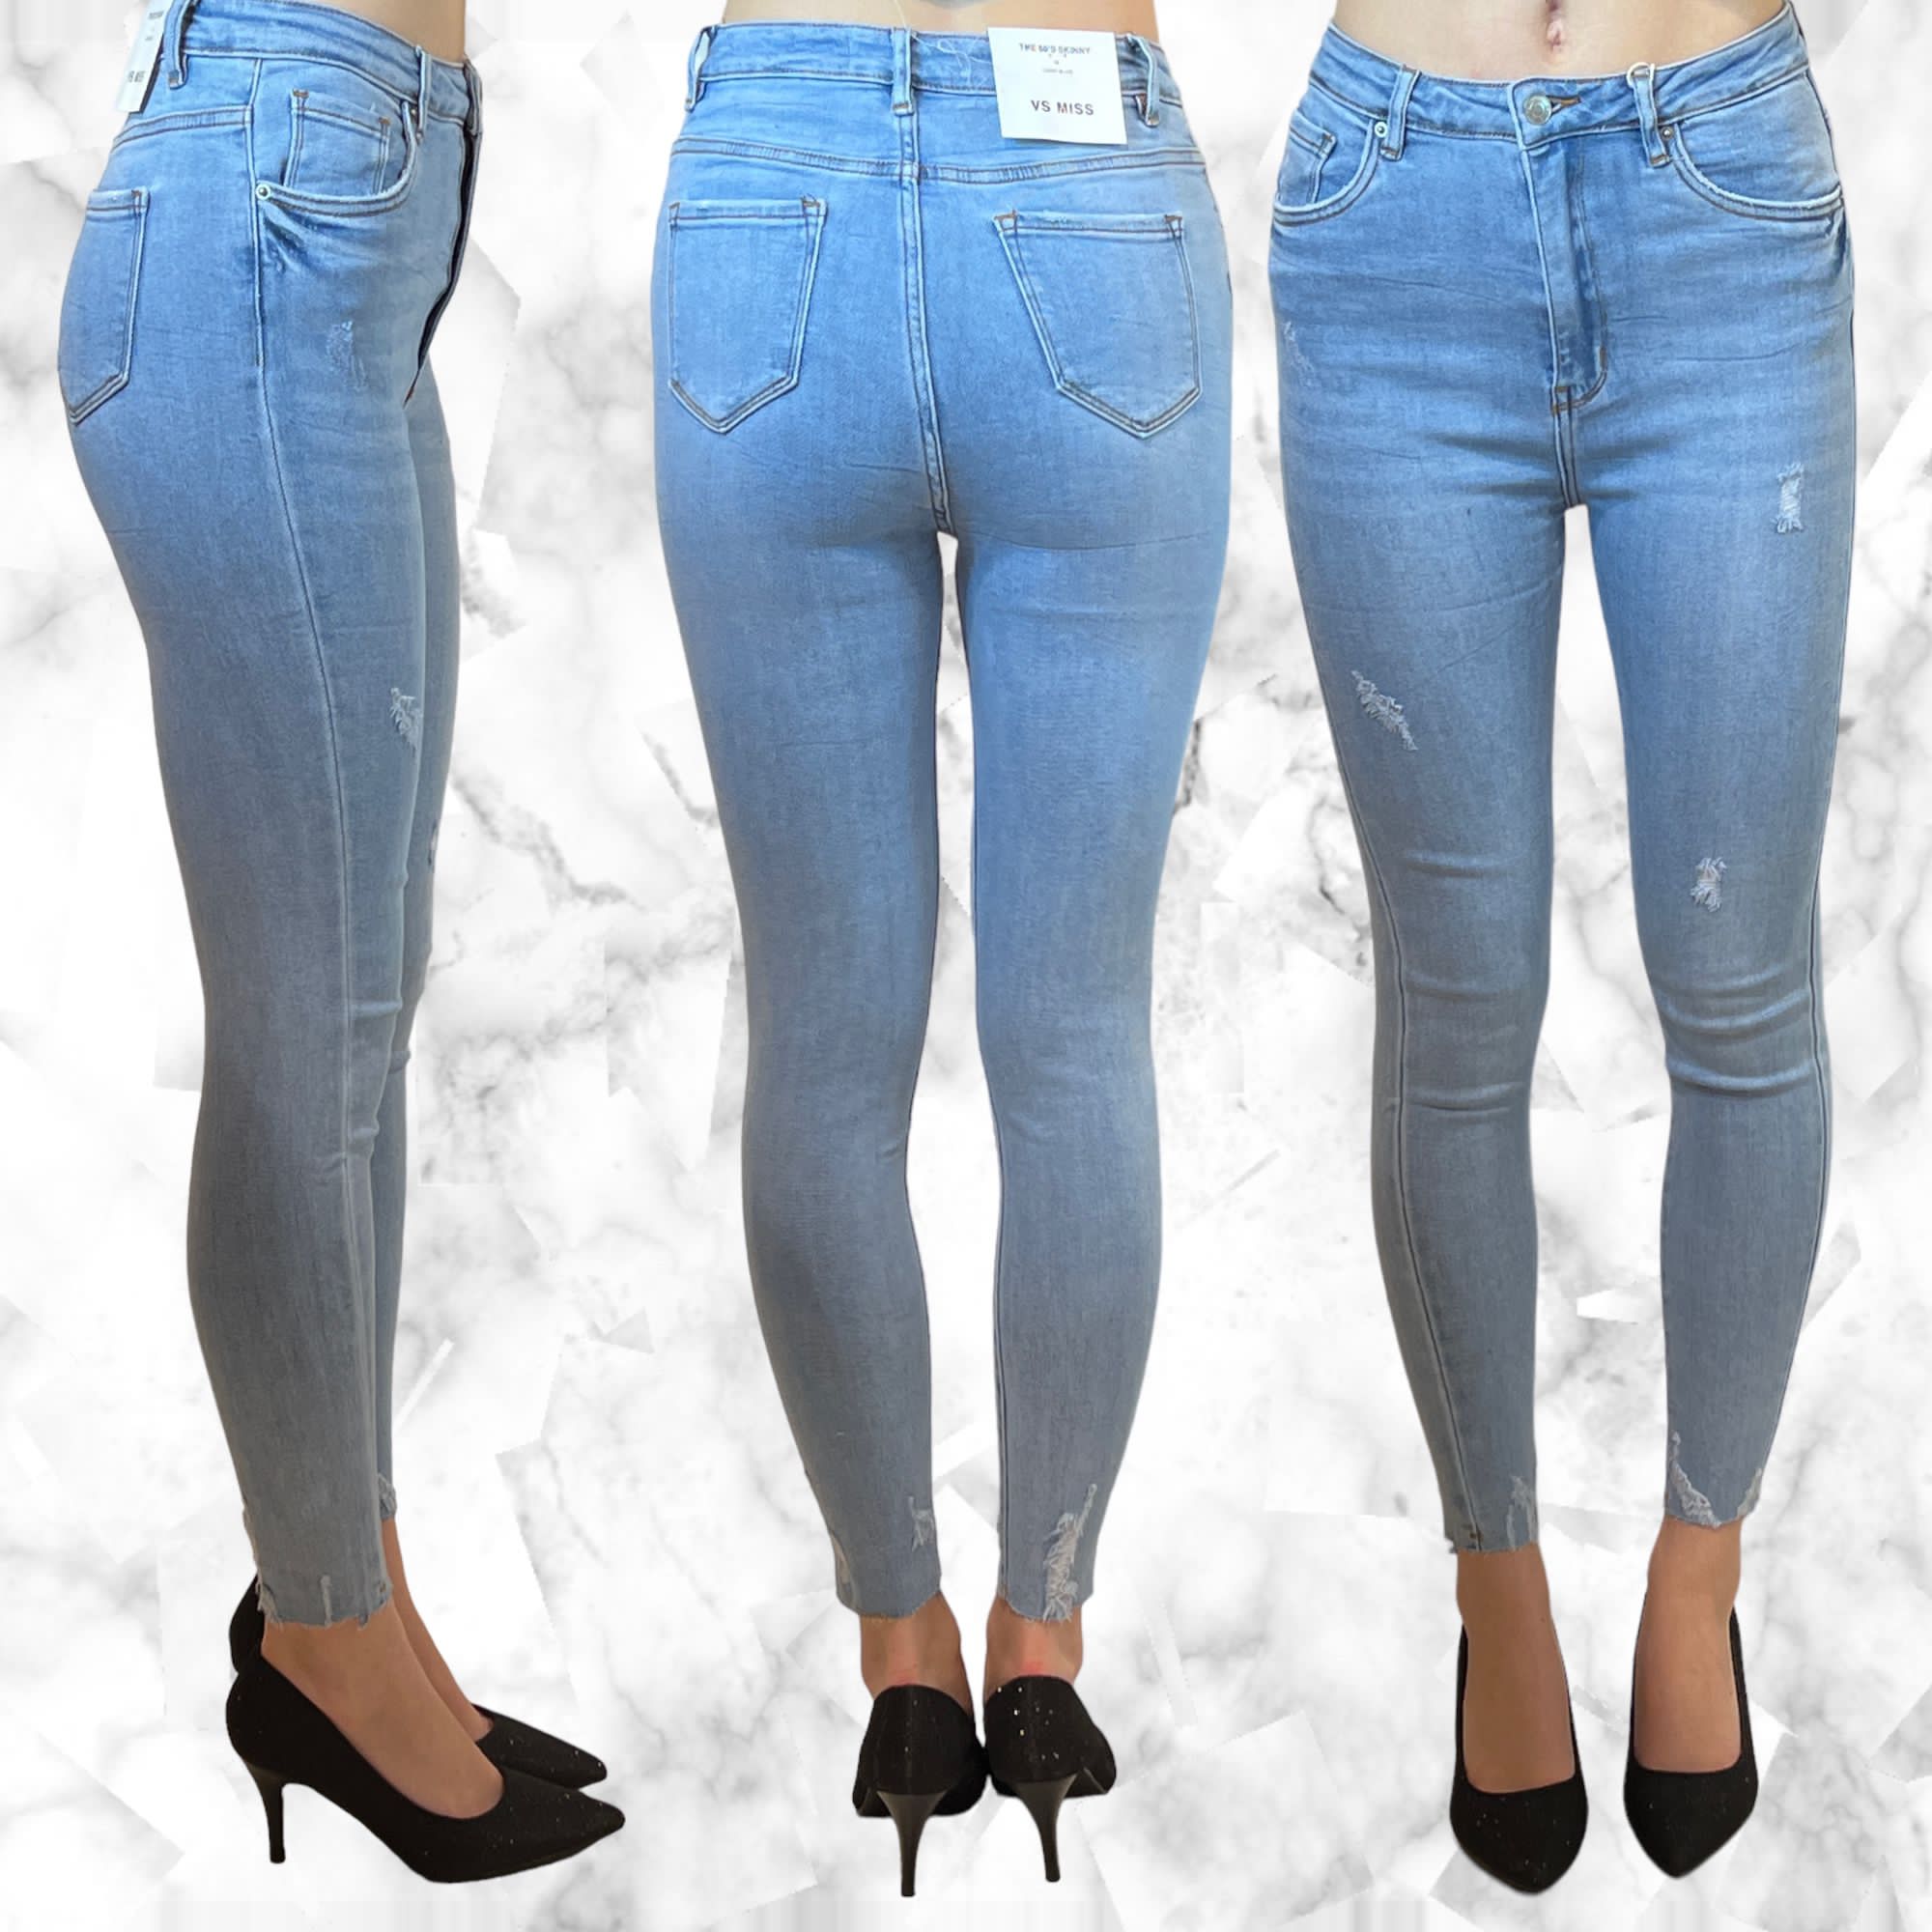 krekel Raap Versnel Dames jeans vs Miss SHW7907 - Zebacollection Breda